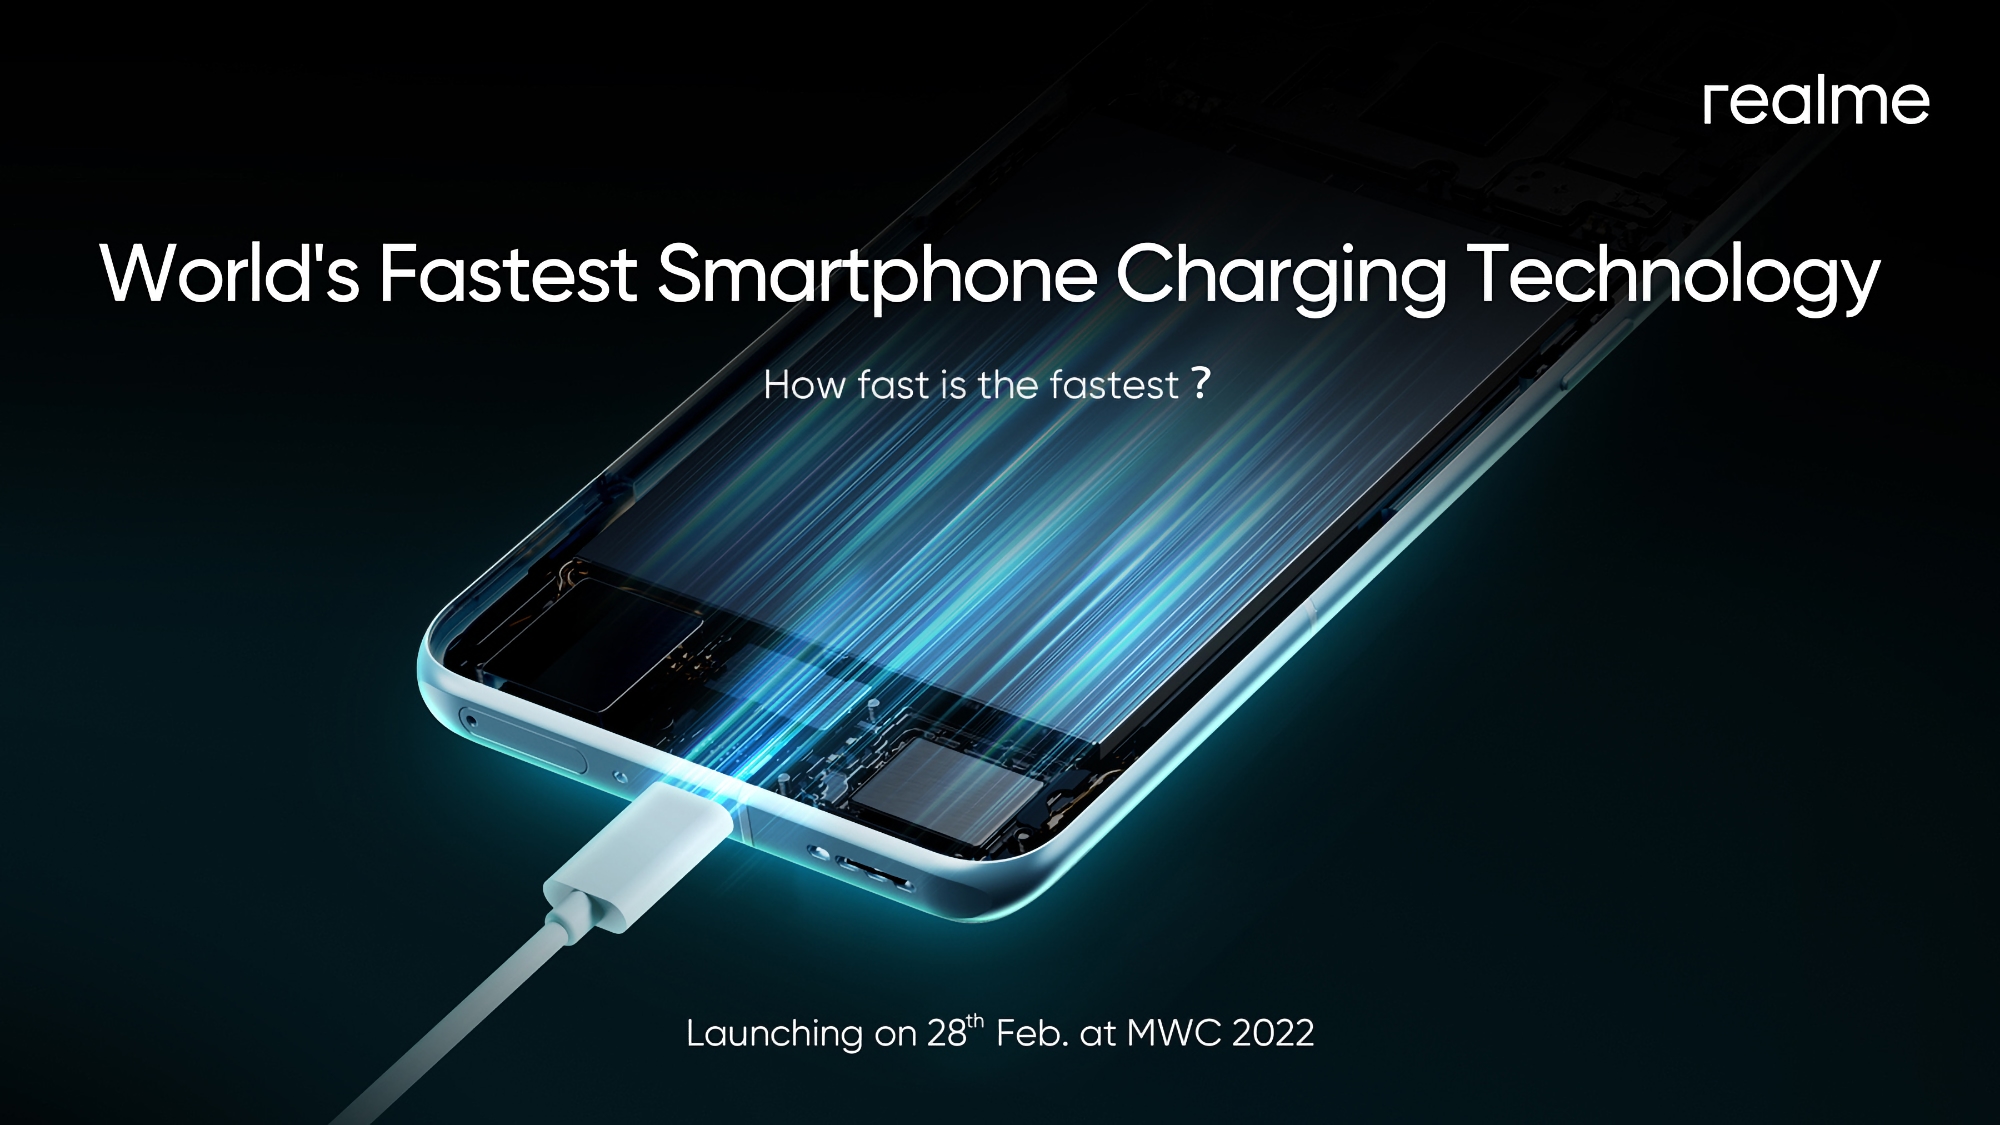 realme 28 лютого презентує «найшвидшу у світі технологію заряджання смартфонів»